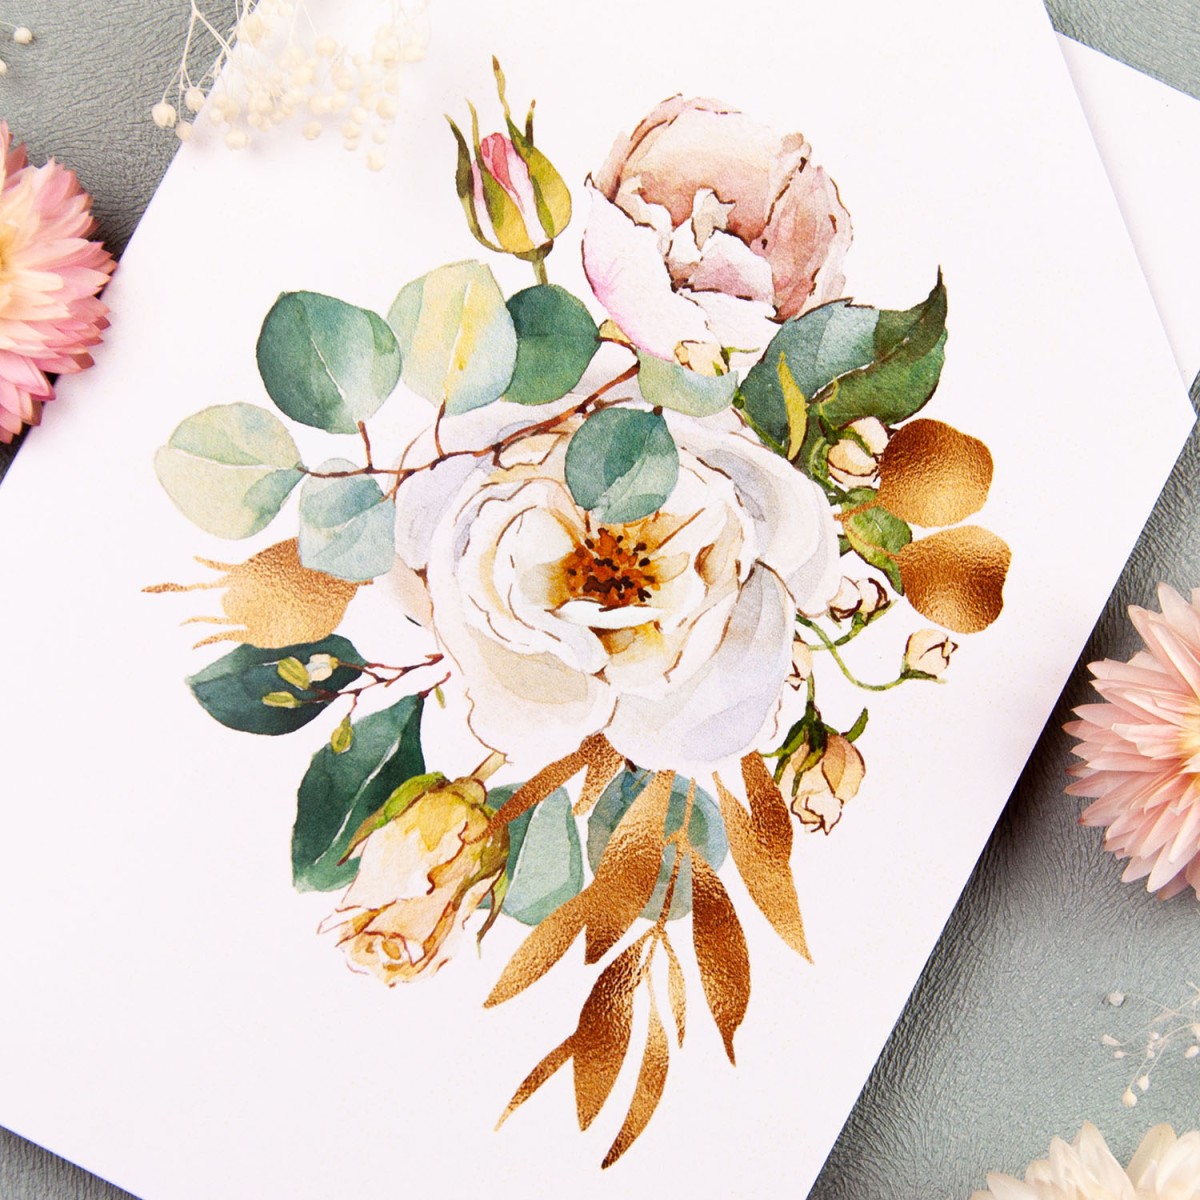 Zaproszenia ślubne z białym kwiatowym etui i złoconym tekstem - Floral Case